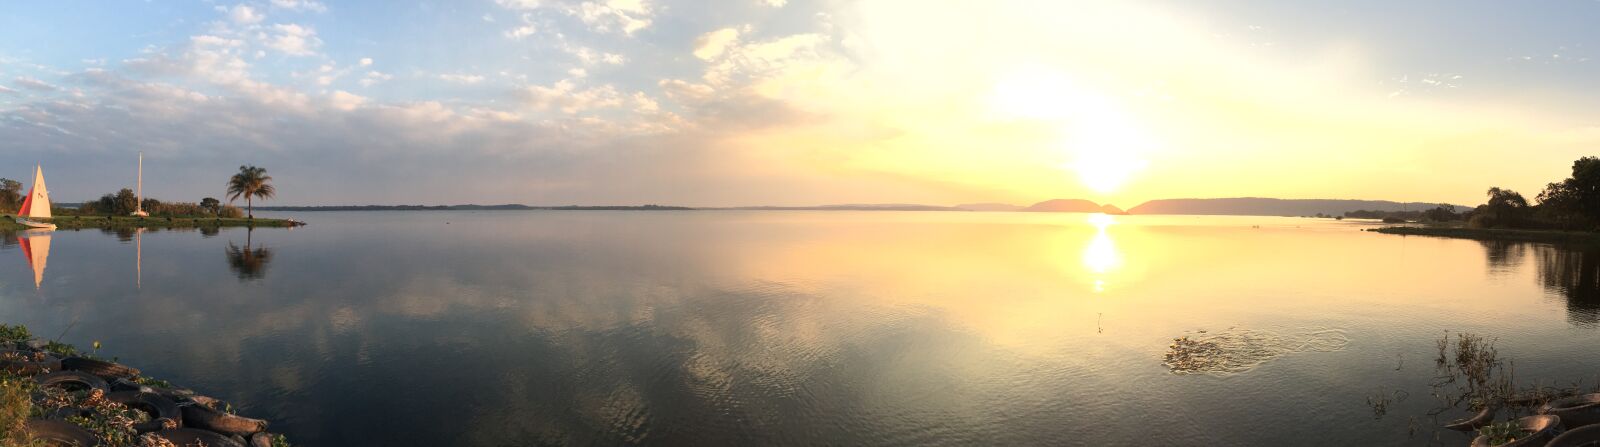 Apple iPhone SE sample photo. Lake, sailboat, sunset photography